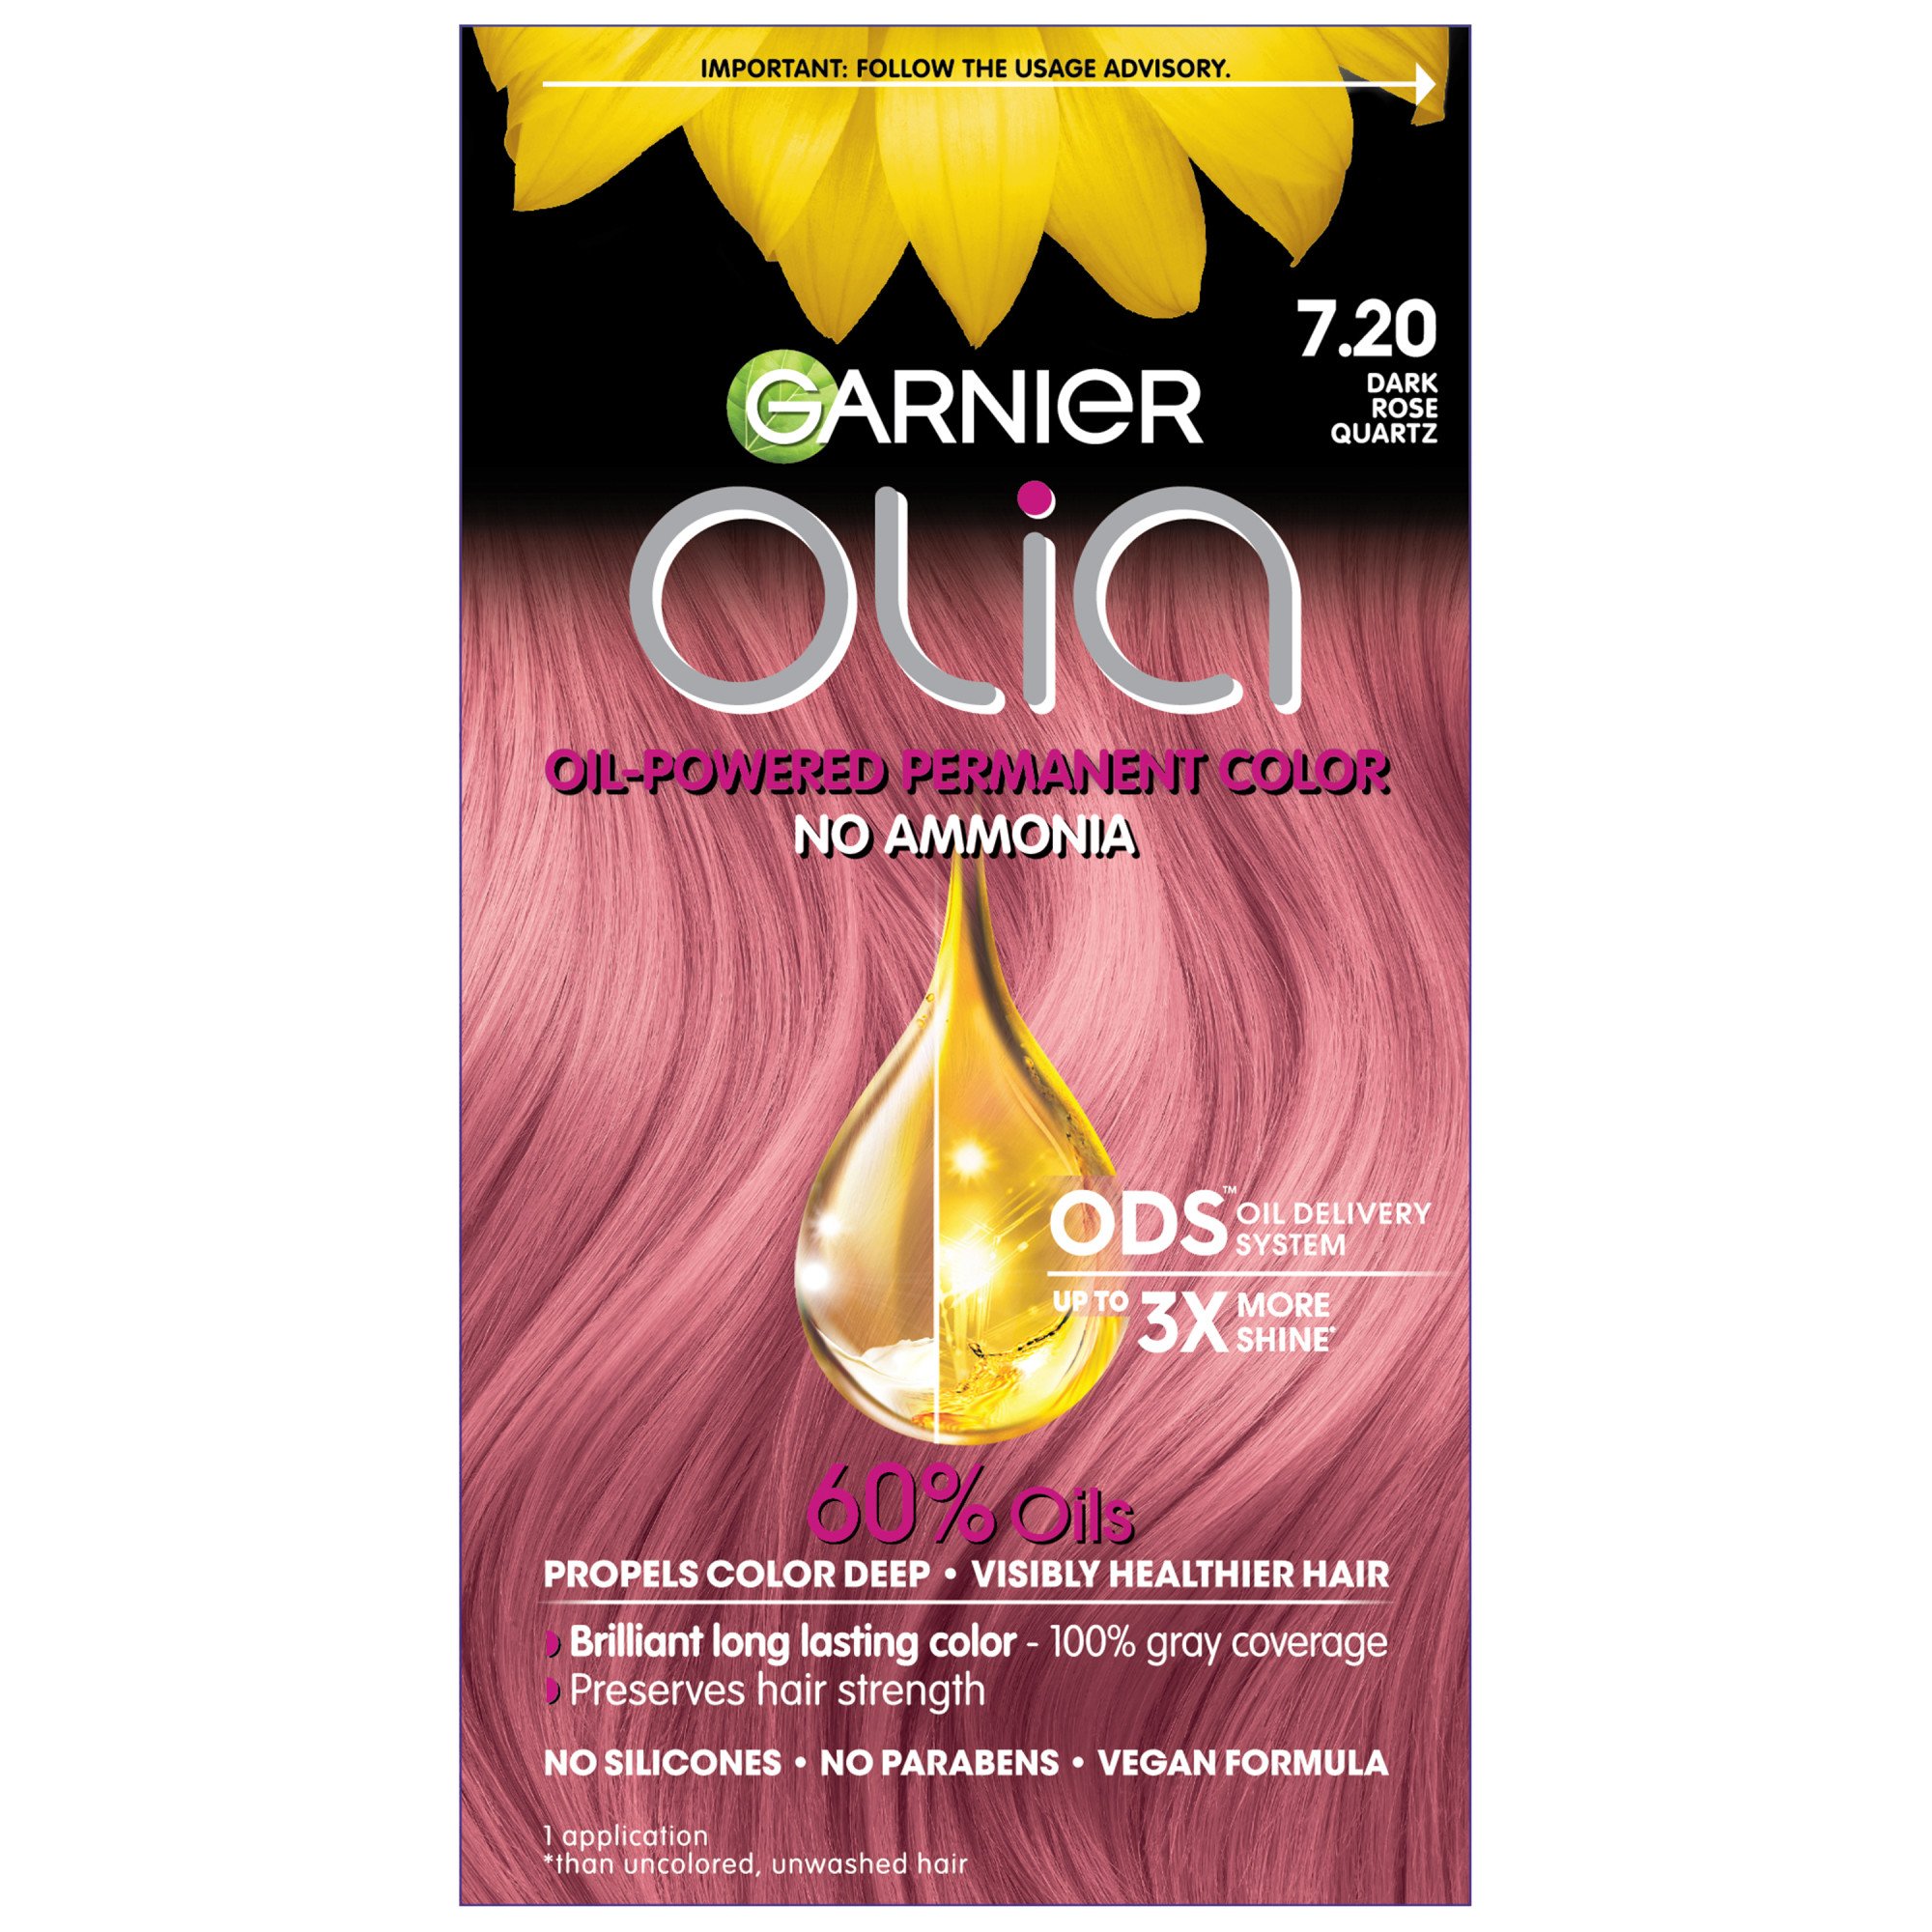 Charmant Bisschop financiën Garnier Olia Hair Color 7.20 Dark Rose Quartz - Shop Hair Care at H-E-B